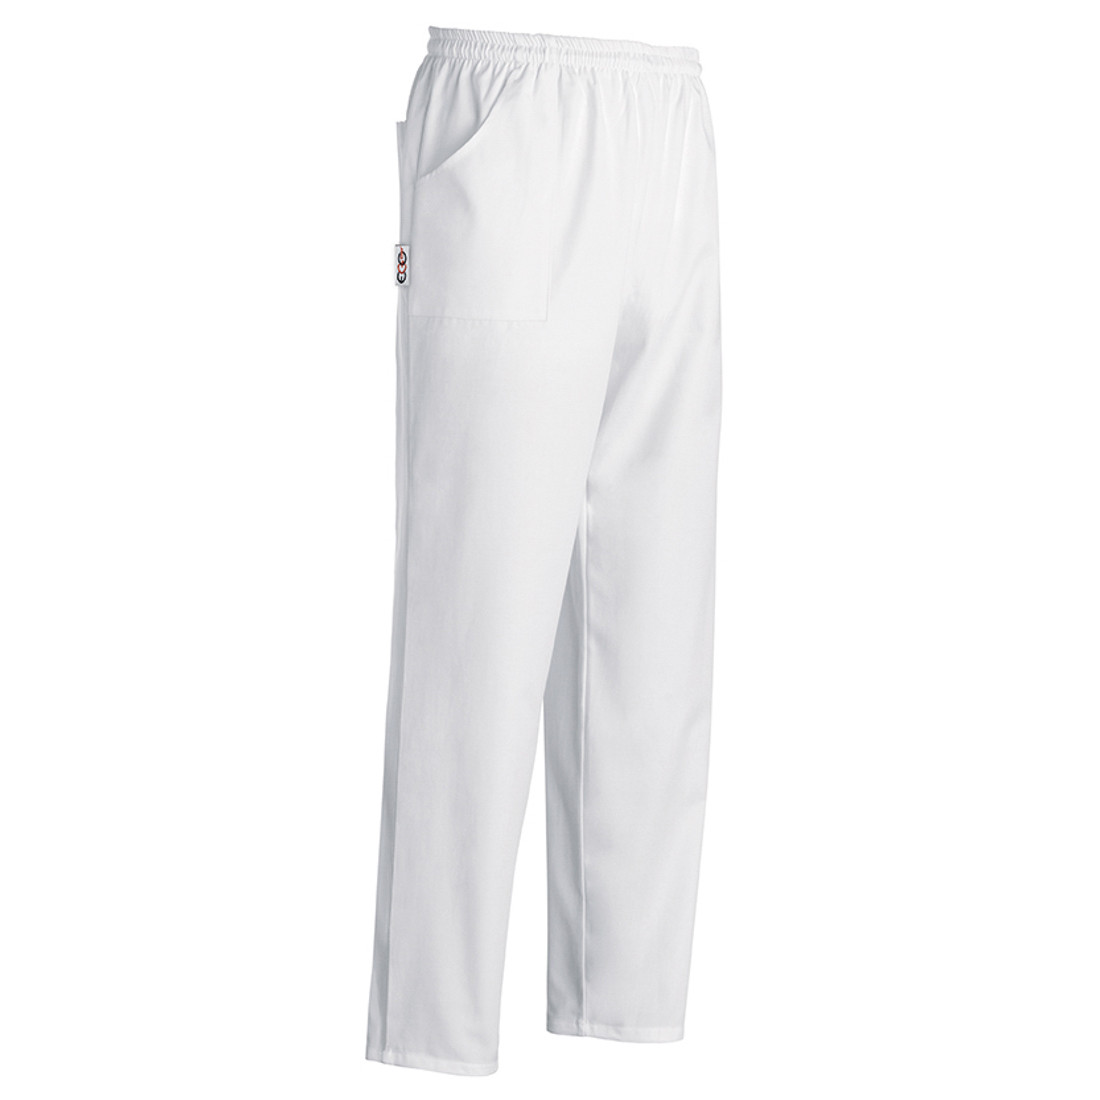 Pantalones Coulisse Pocket - Ropa de protección